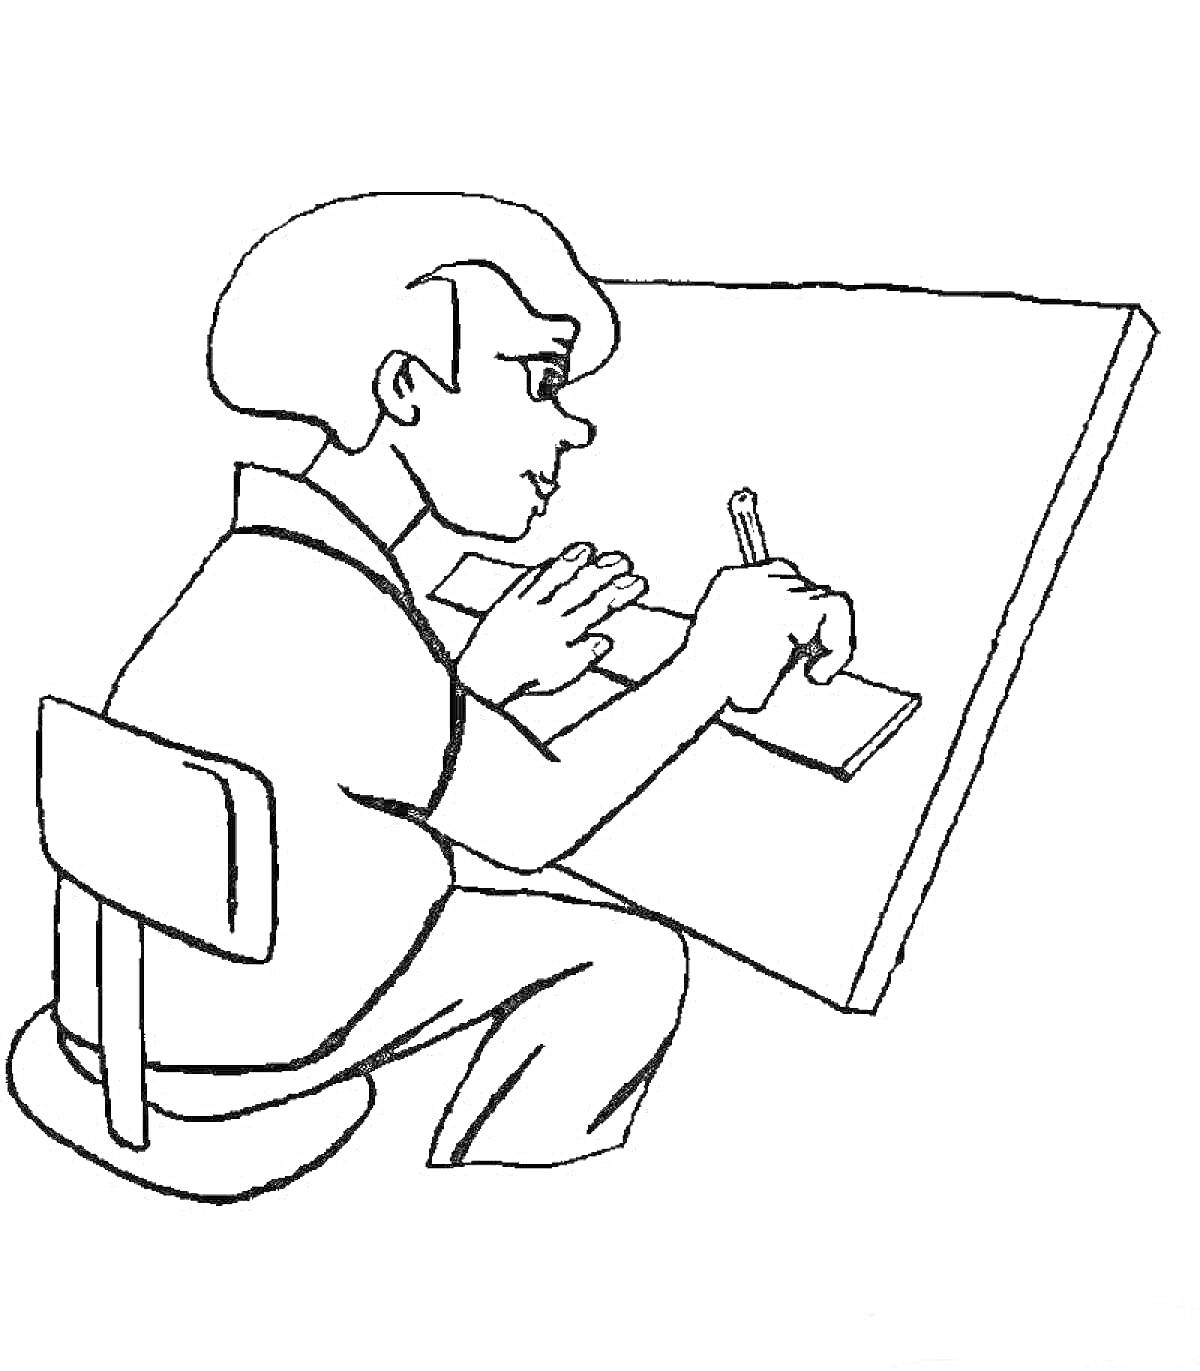 Раскраска Ребёнок инженер за чертёжной доской с карандашом и линейкой